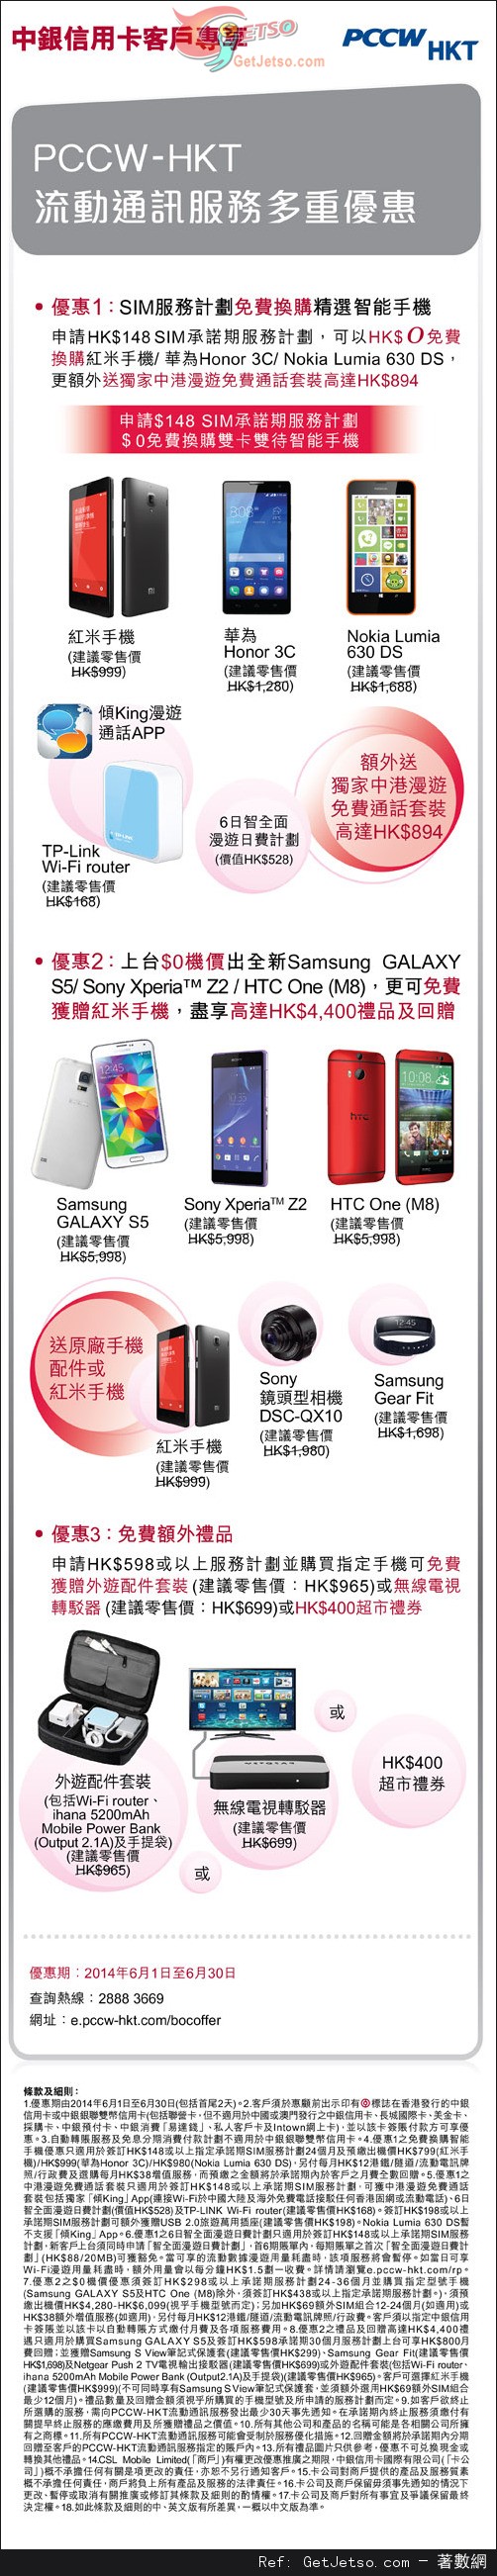 中銀信用卡享PCCW-HKT流動通訊服務多重優惠(至14年6月30日)圖片1